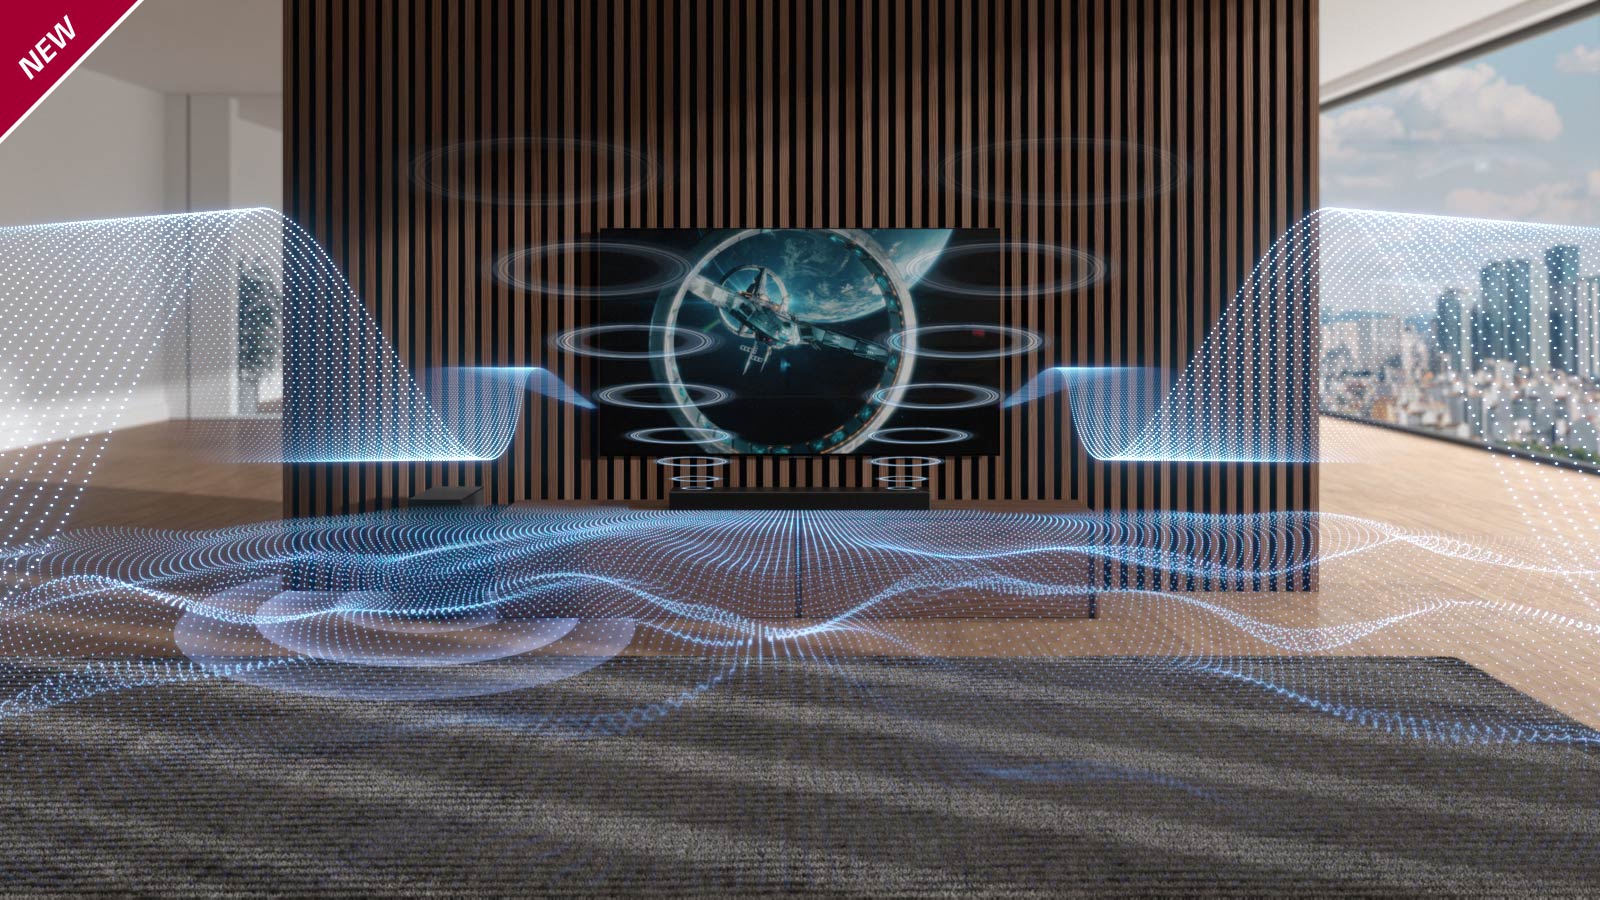 Διάφορα ηχητικά κύματα μπλε χρώματος απελευθερώνονται από το Sound Bar και την τηλεόραση. Το σήμα NEW εμφανίζεται στην επάνω αριστερή γωνία.